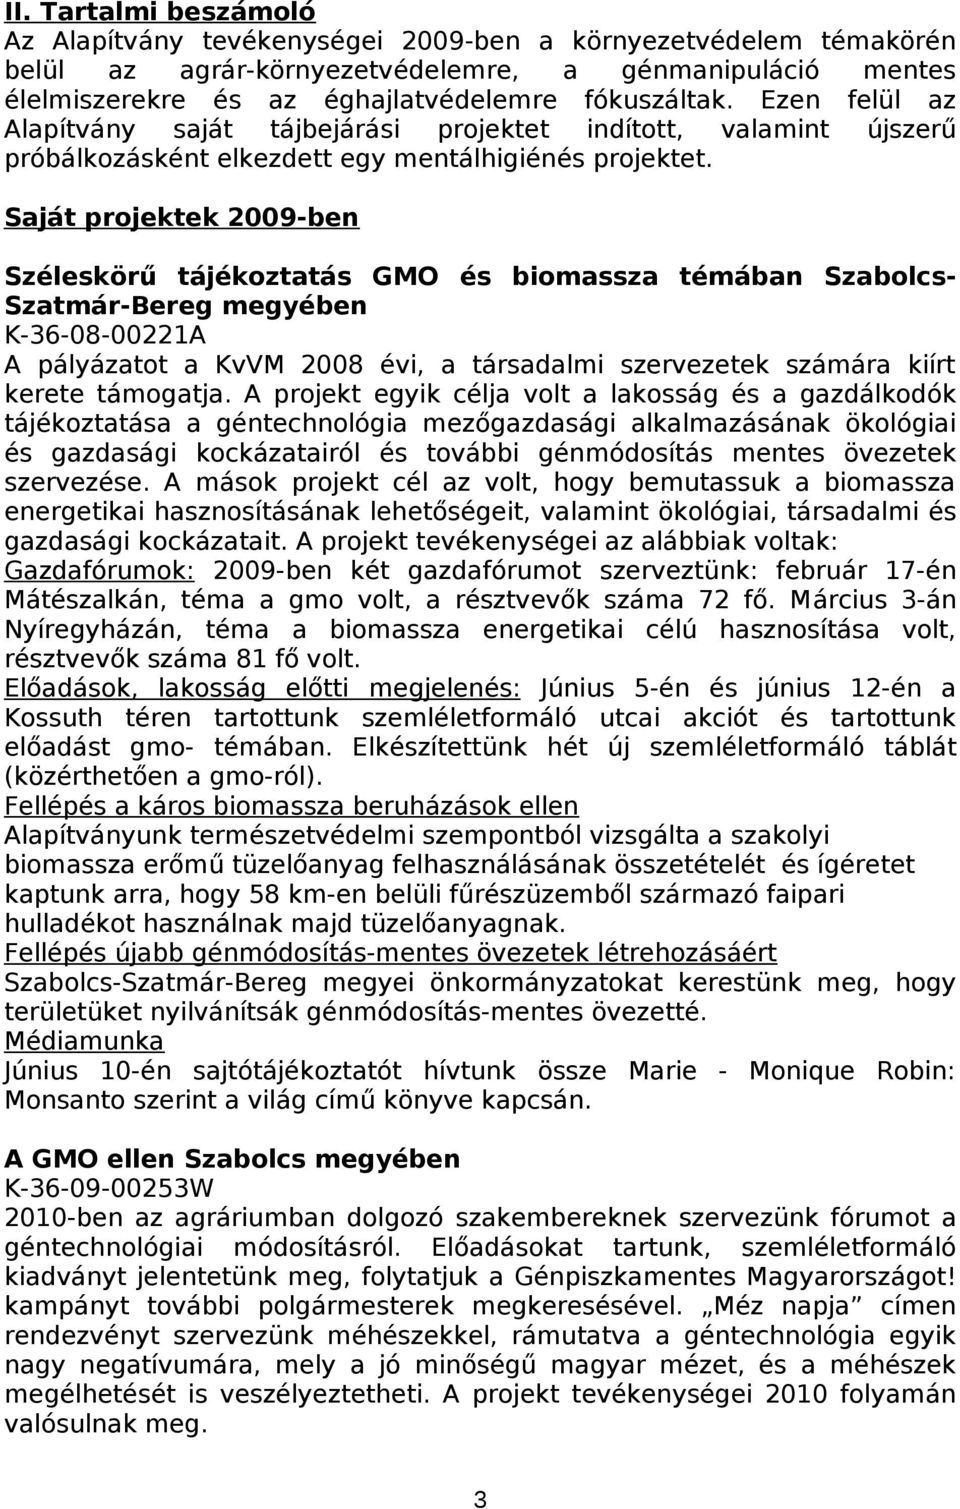 Saját projektek 2009-ben Széleskörű tájékoztatás GMO és biomassza témában Szabolcs- Szatmár-Bereg megyében K-36-08-00221A A pályázatot a KvVM 2008 évi, a társadalmi szervezetek számára kiírt kerete